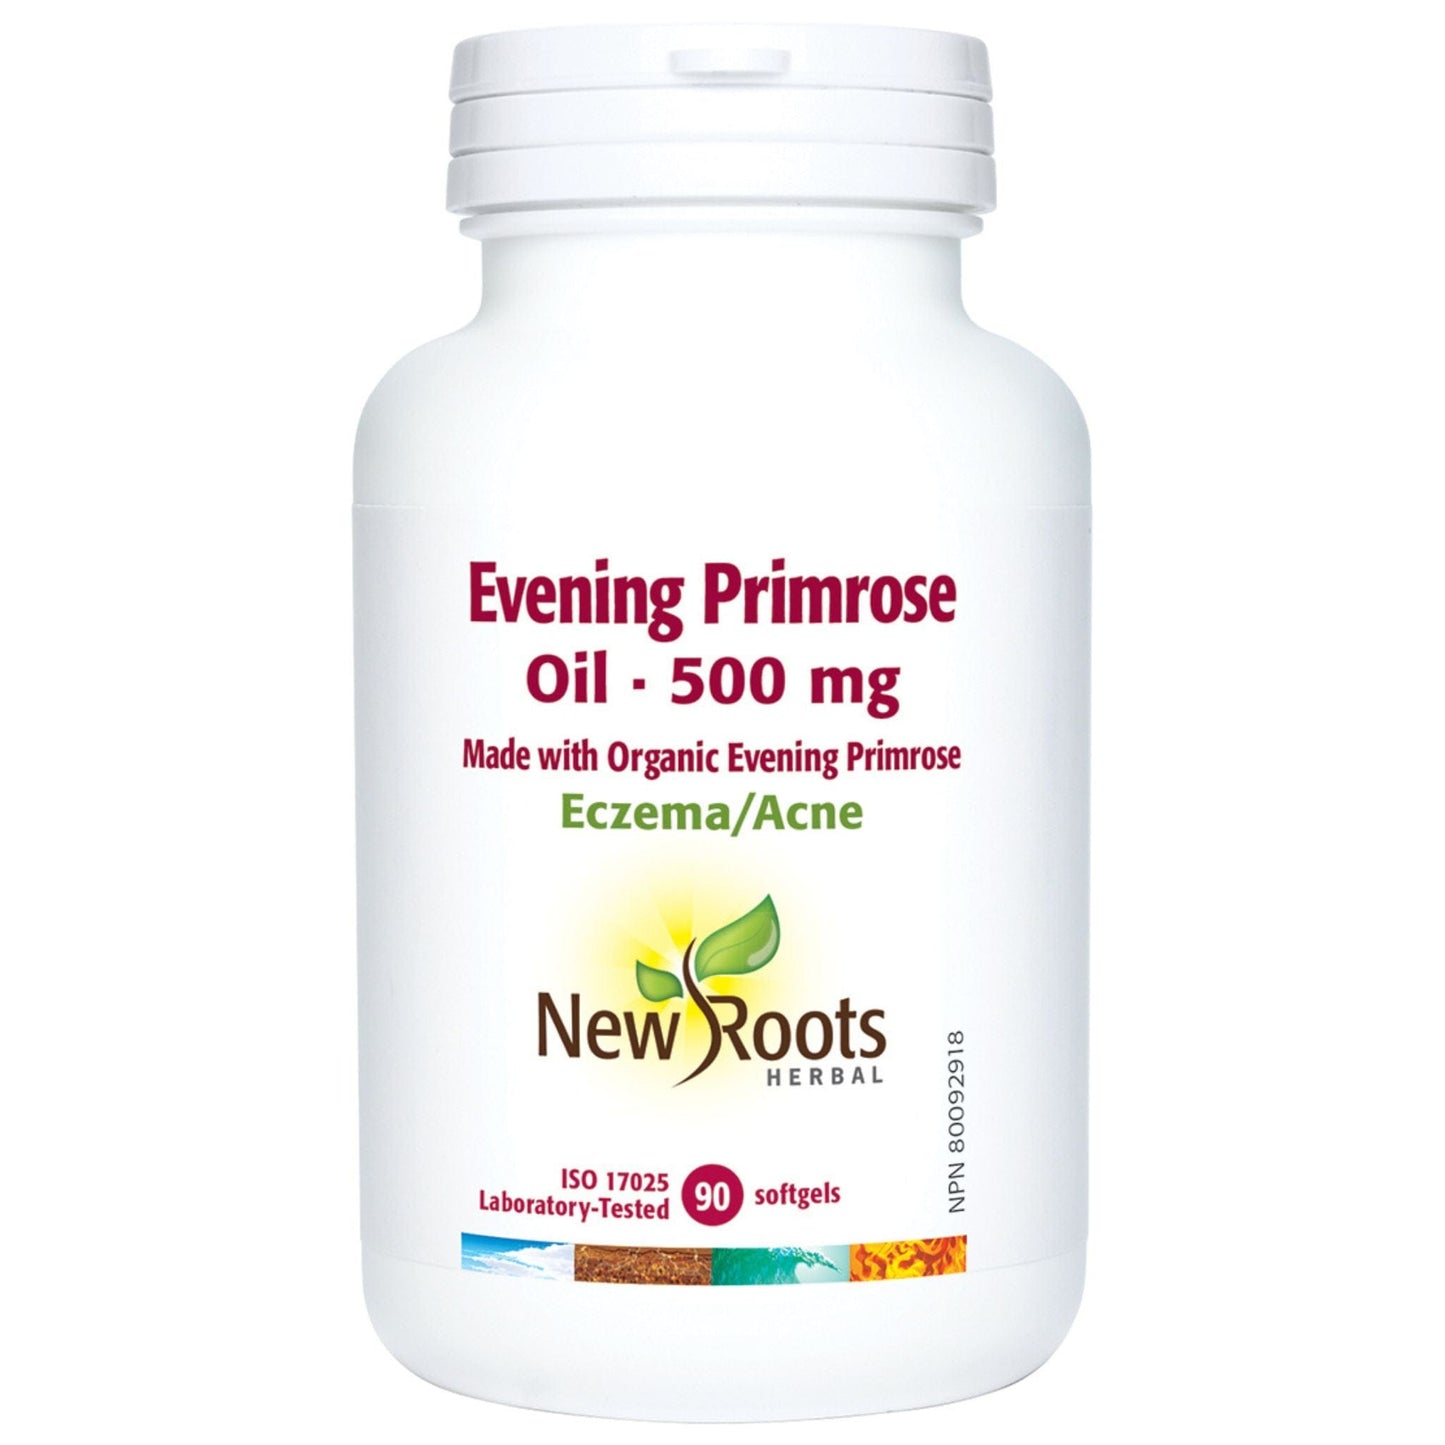 90 Softgels | New Roots Herbal Evening Primerose Oil bottle